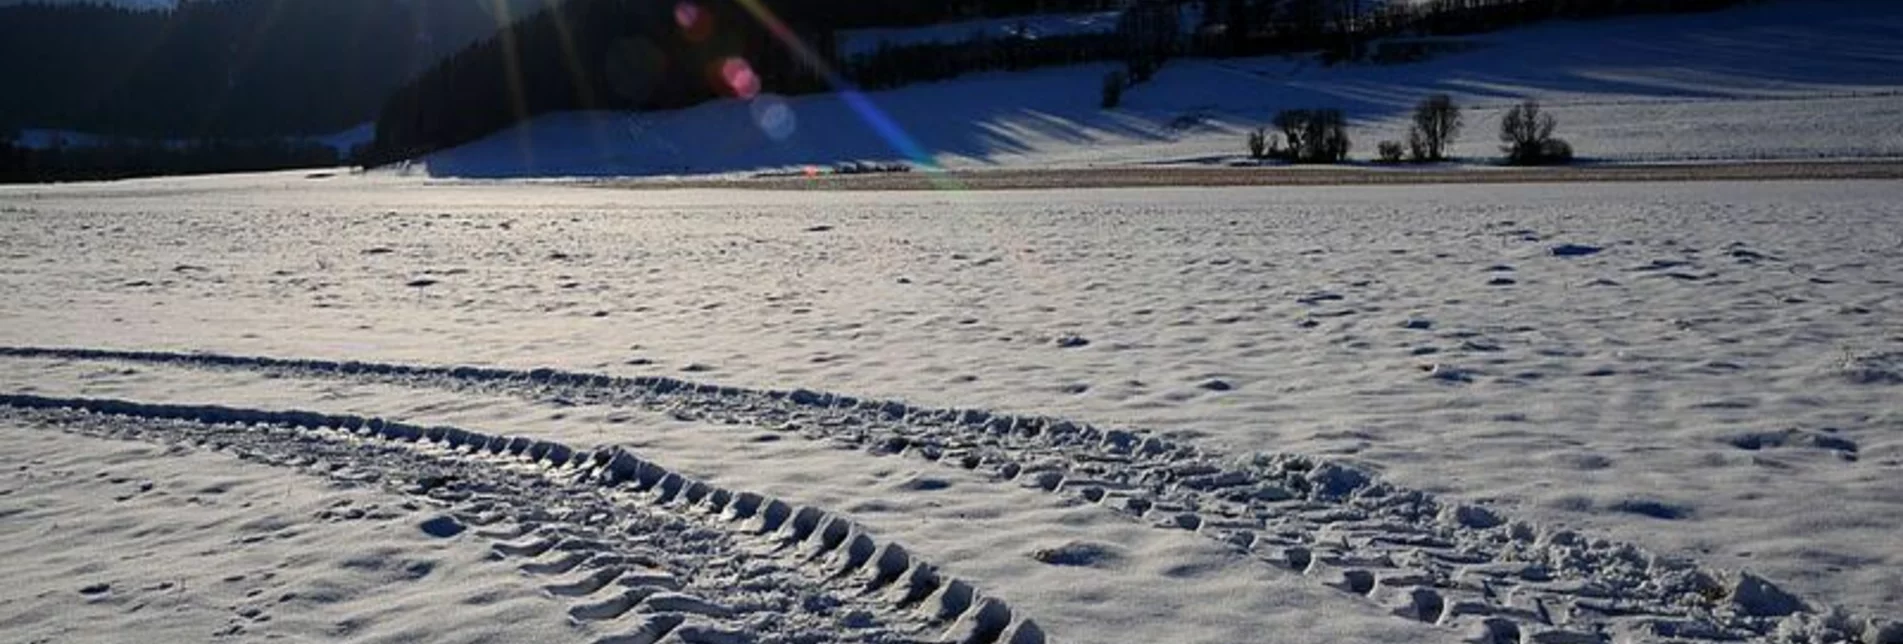 Winterwandern Winter - Thermen Rundwanderweg - Touren-Impression #1 | © Erlebnisregion Murtal